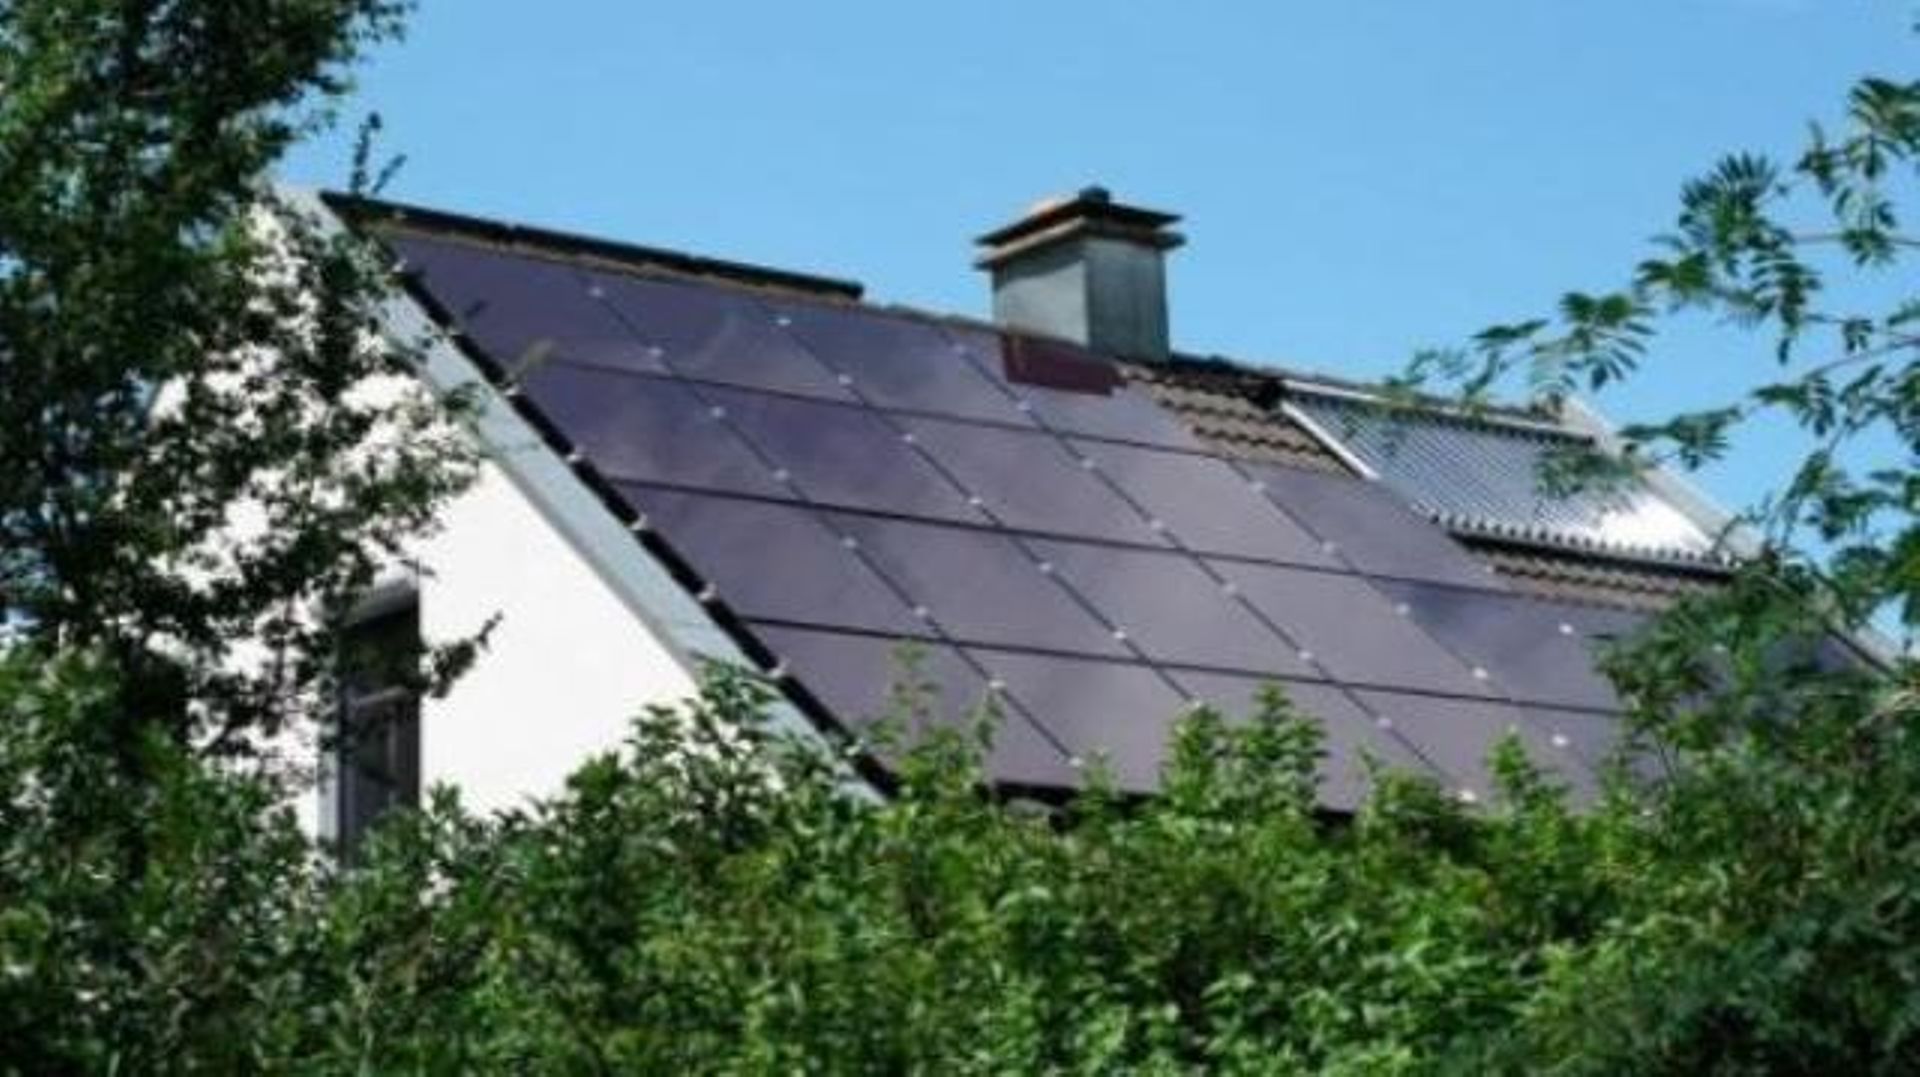 Nouveau régime de soutien au photovoltaïque dès janvier prochain